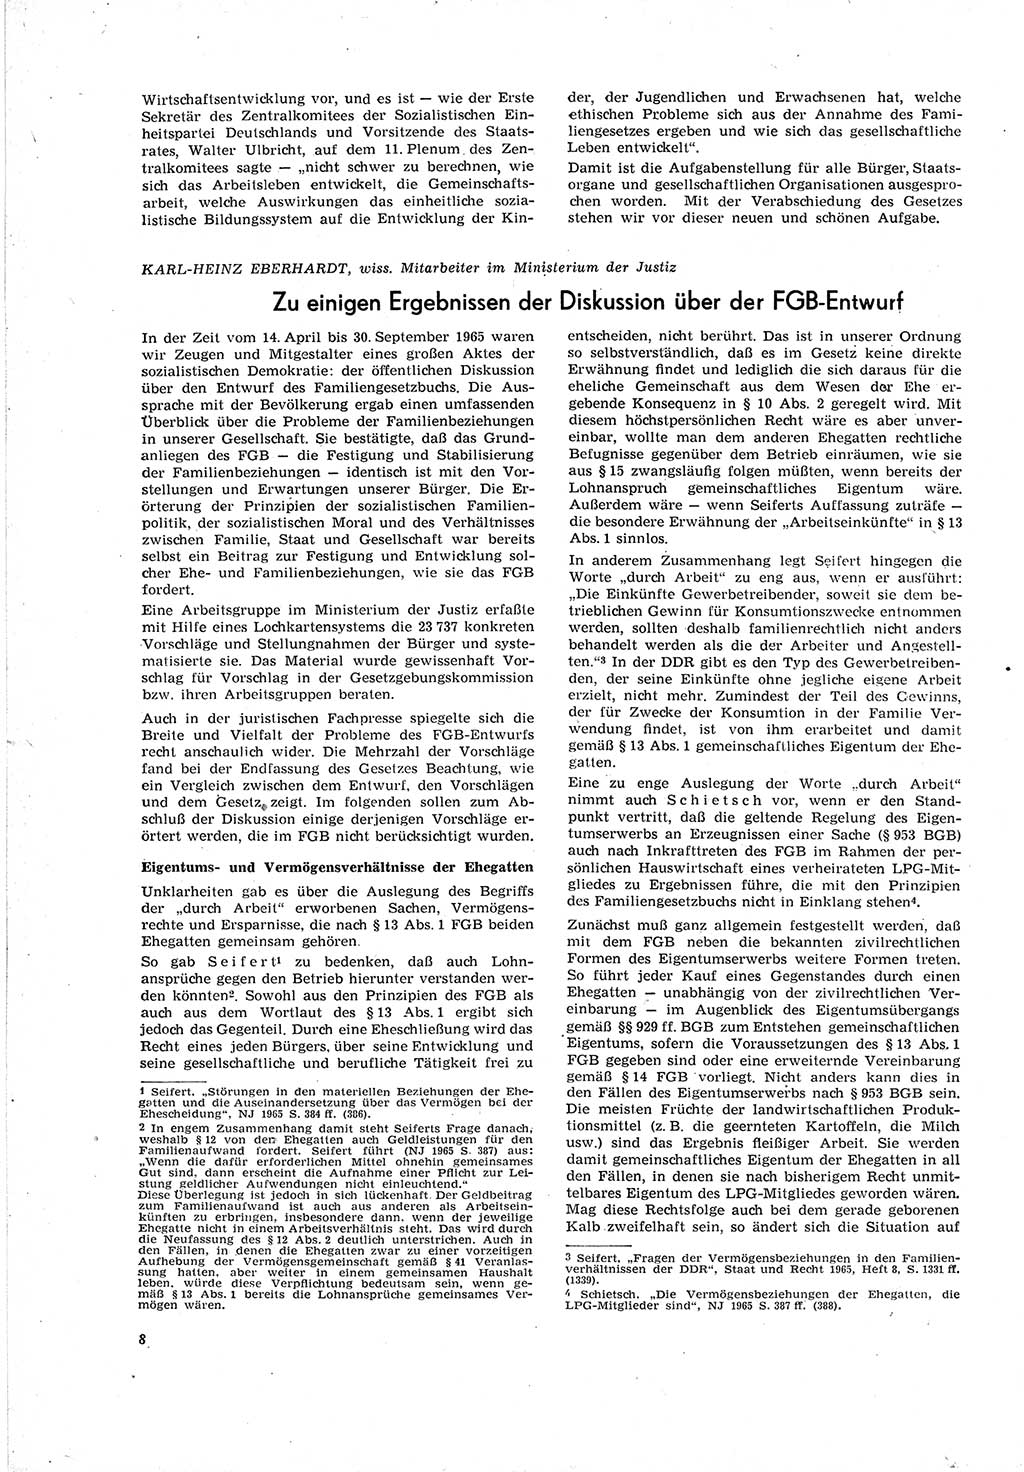 Neue Justiz (NJ), Zeitschrift für Recht und Rechtswissenschaft [Deutsche Demokratische Republik (DDR)], 20. Jahrgang 1966, Seite 8 (NJ DDR 1966, S. 8)